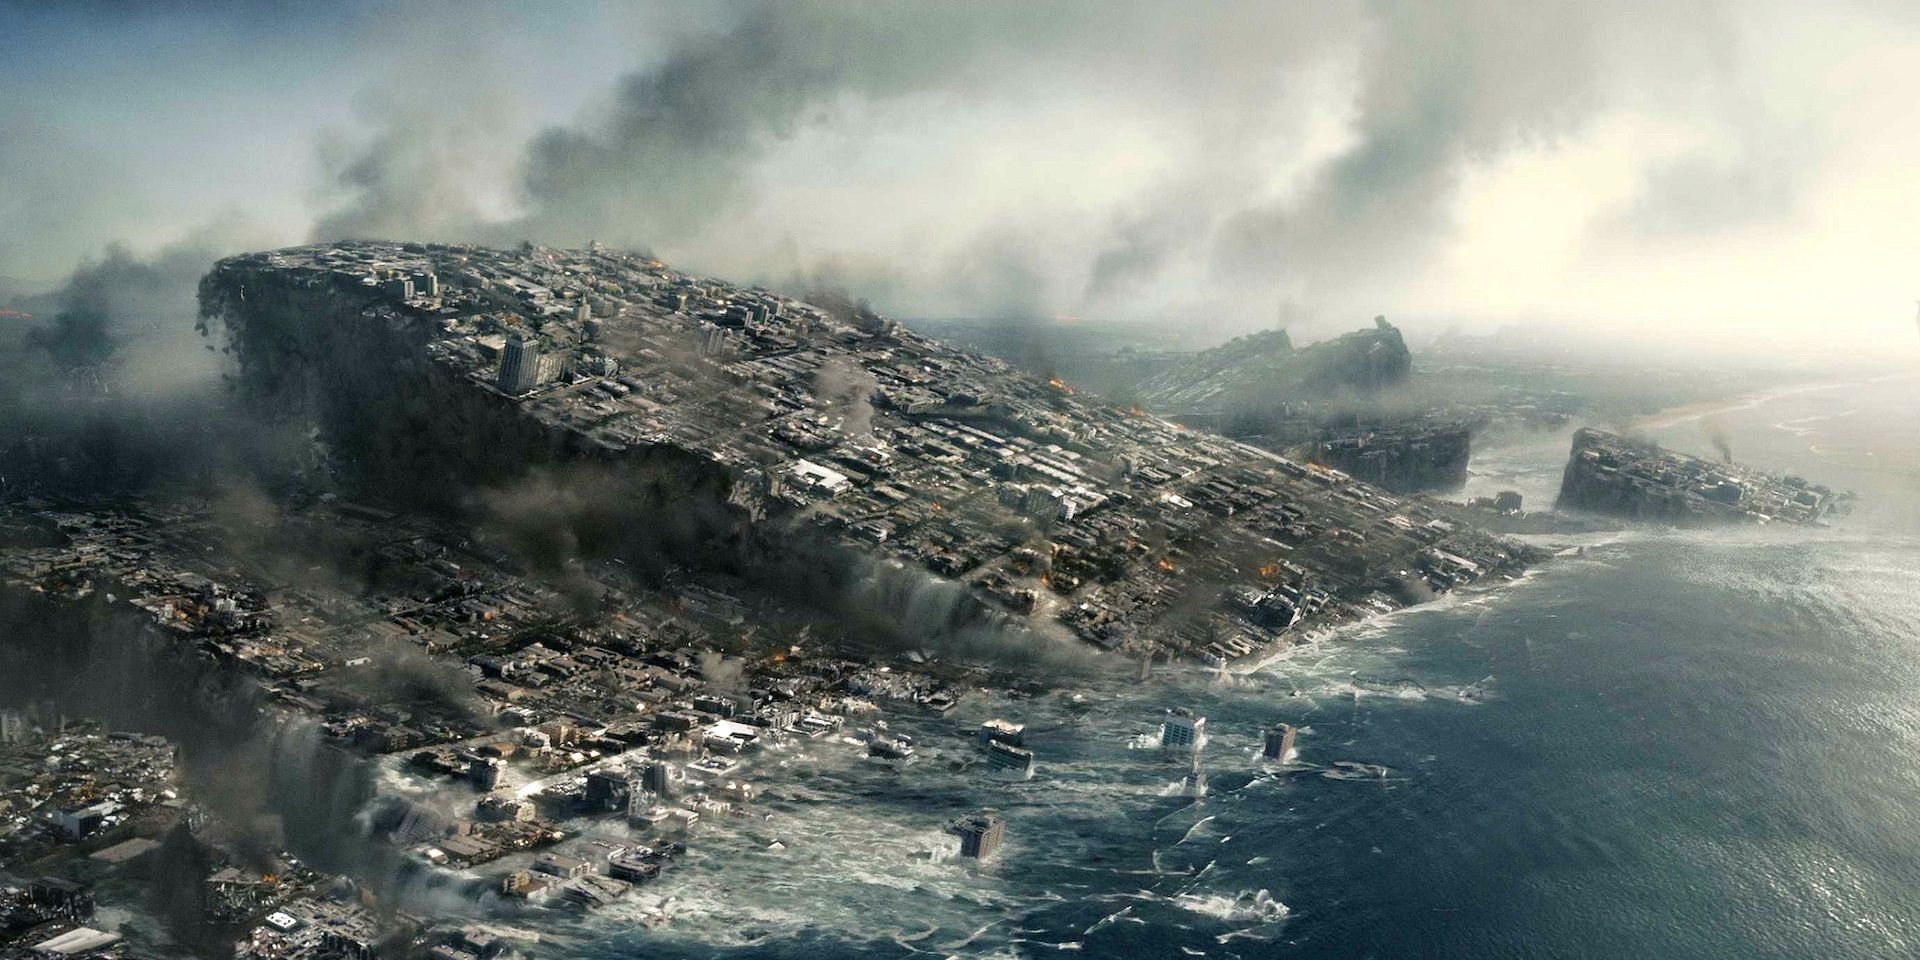 2012 - Most Awe-Inspiring Disaster Movies